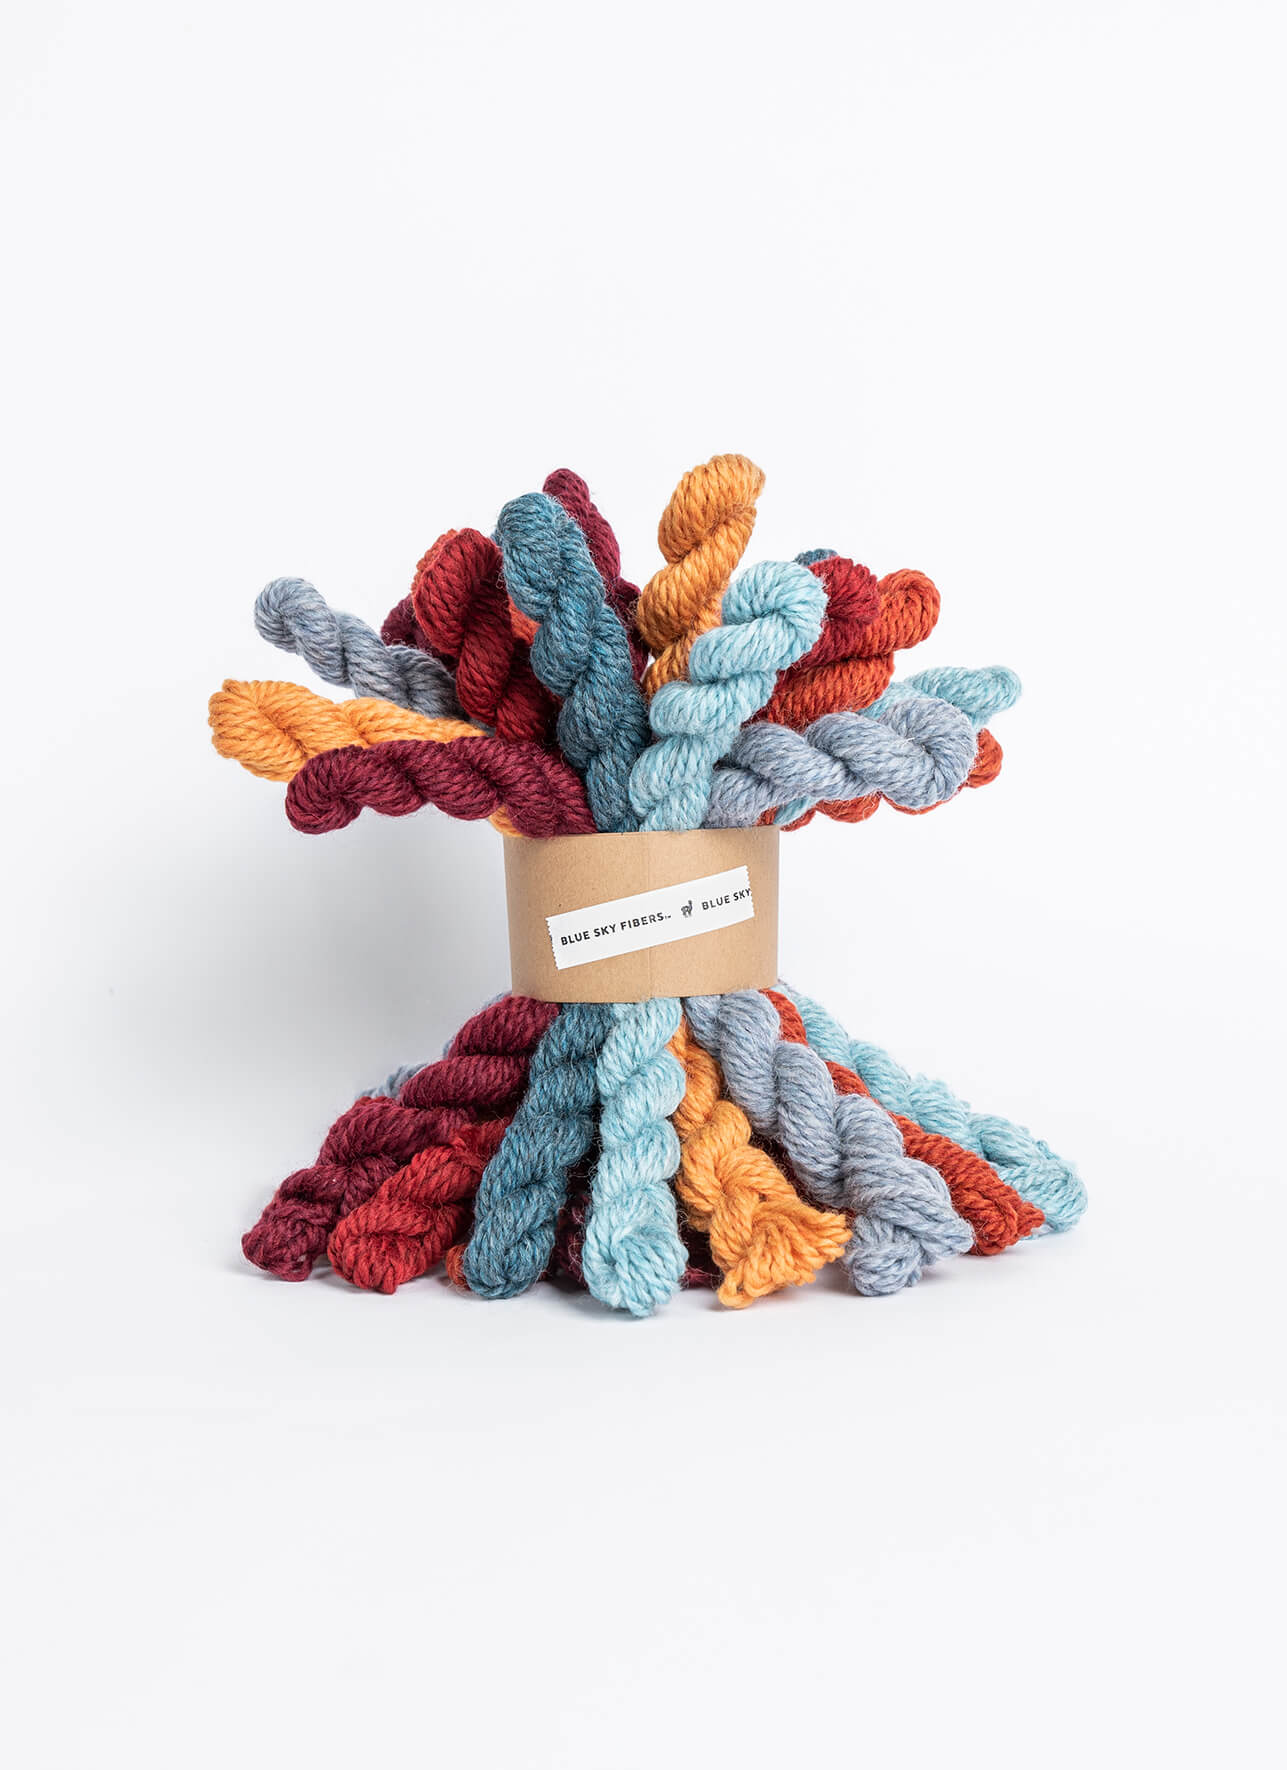 Huck  Knit picks, Brooklyn tweed yarn, Hat knitting patterns